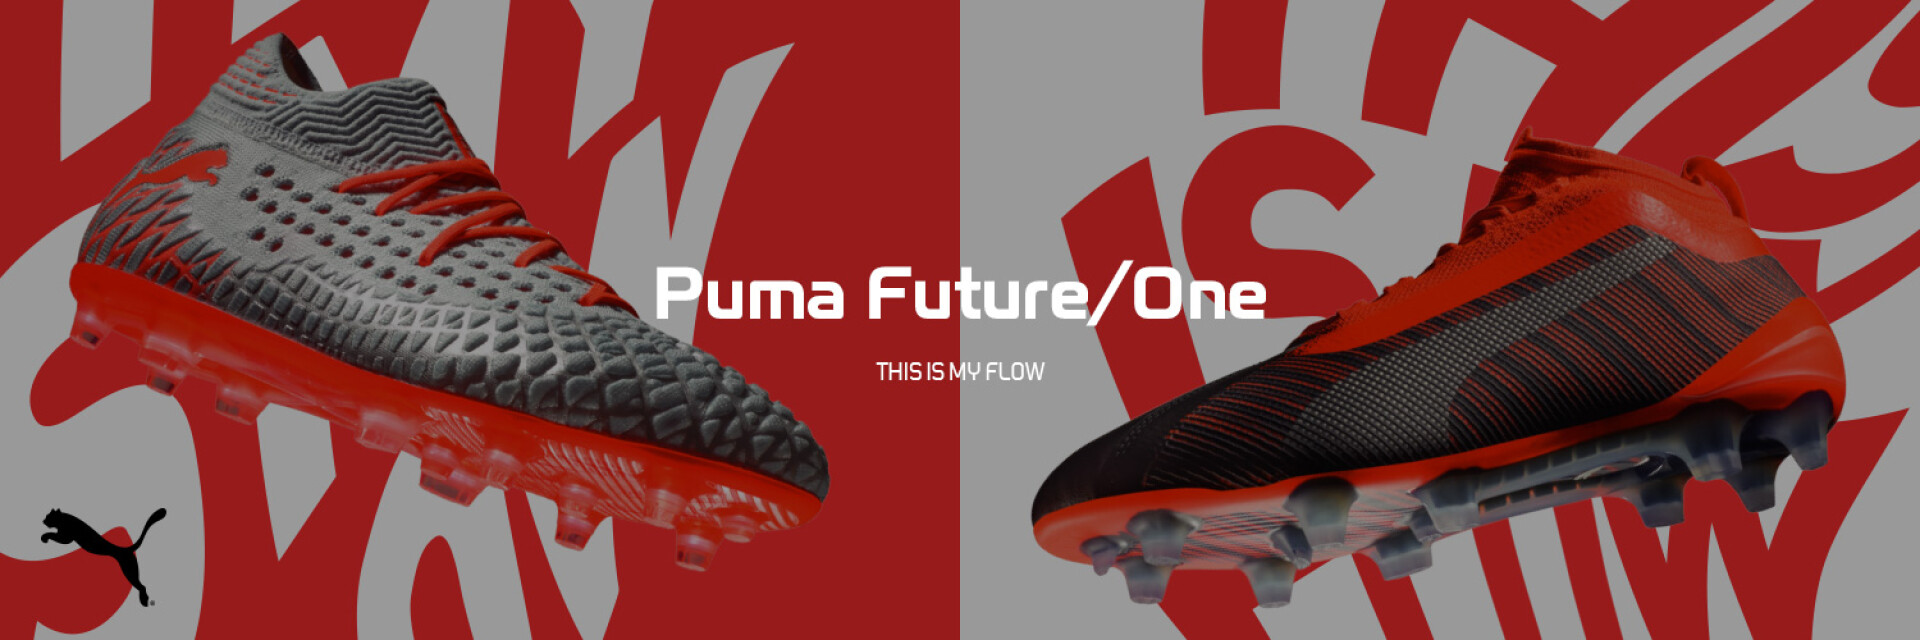 Puma Future One